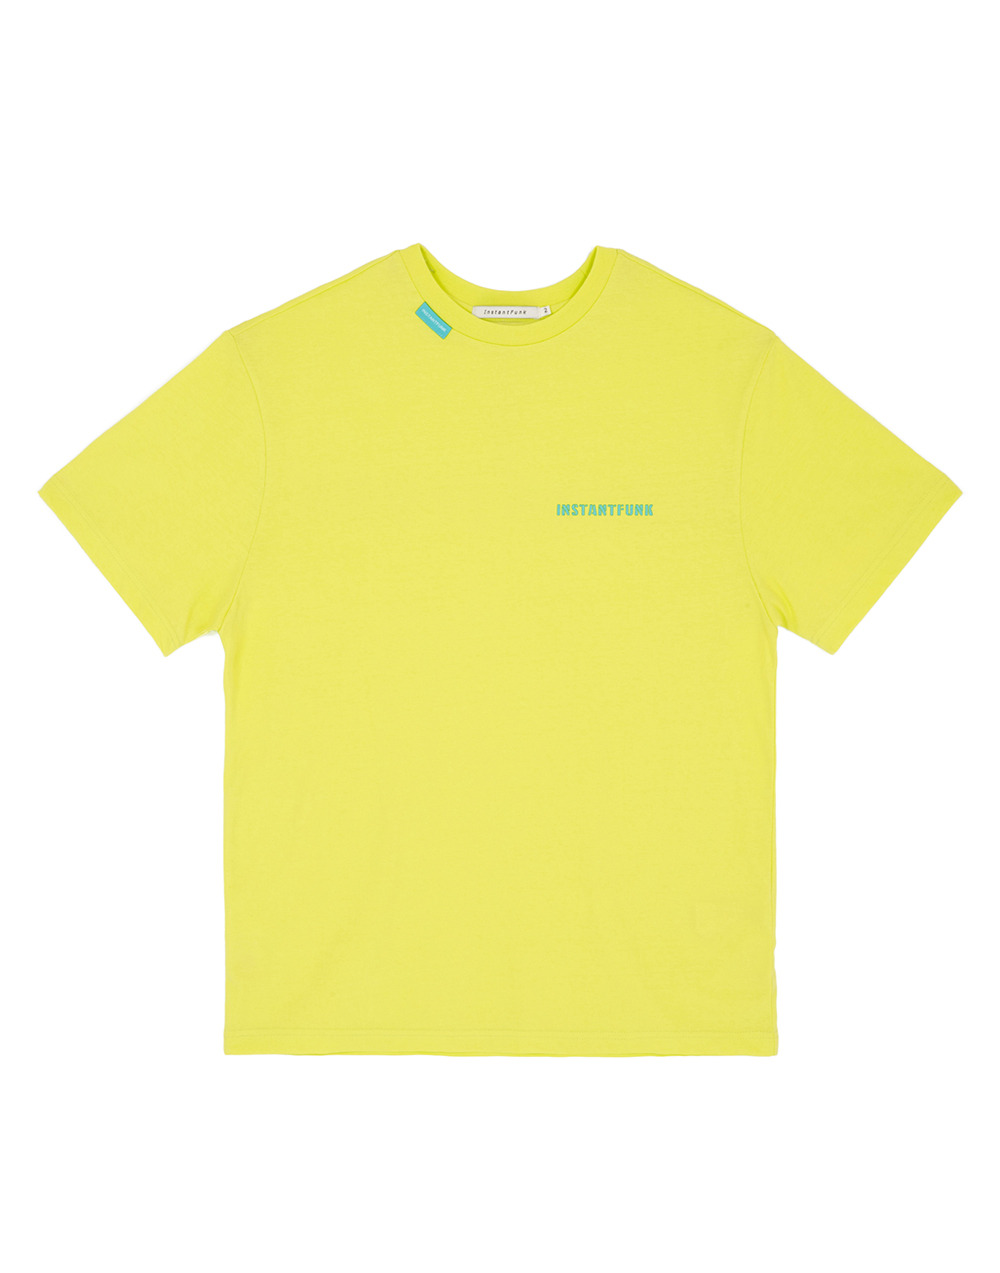 에센셜 로고 티셔츠 - 옐로우